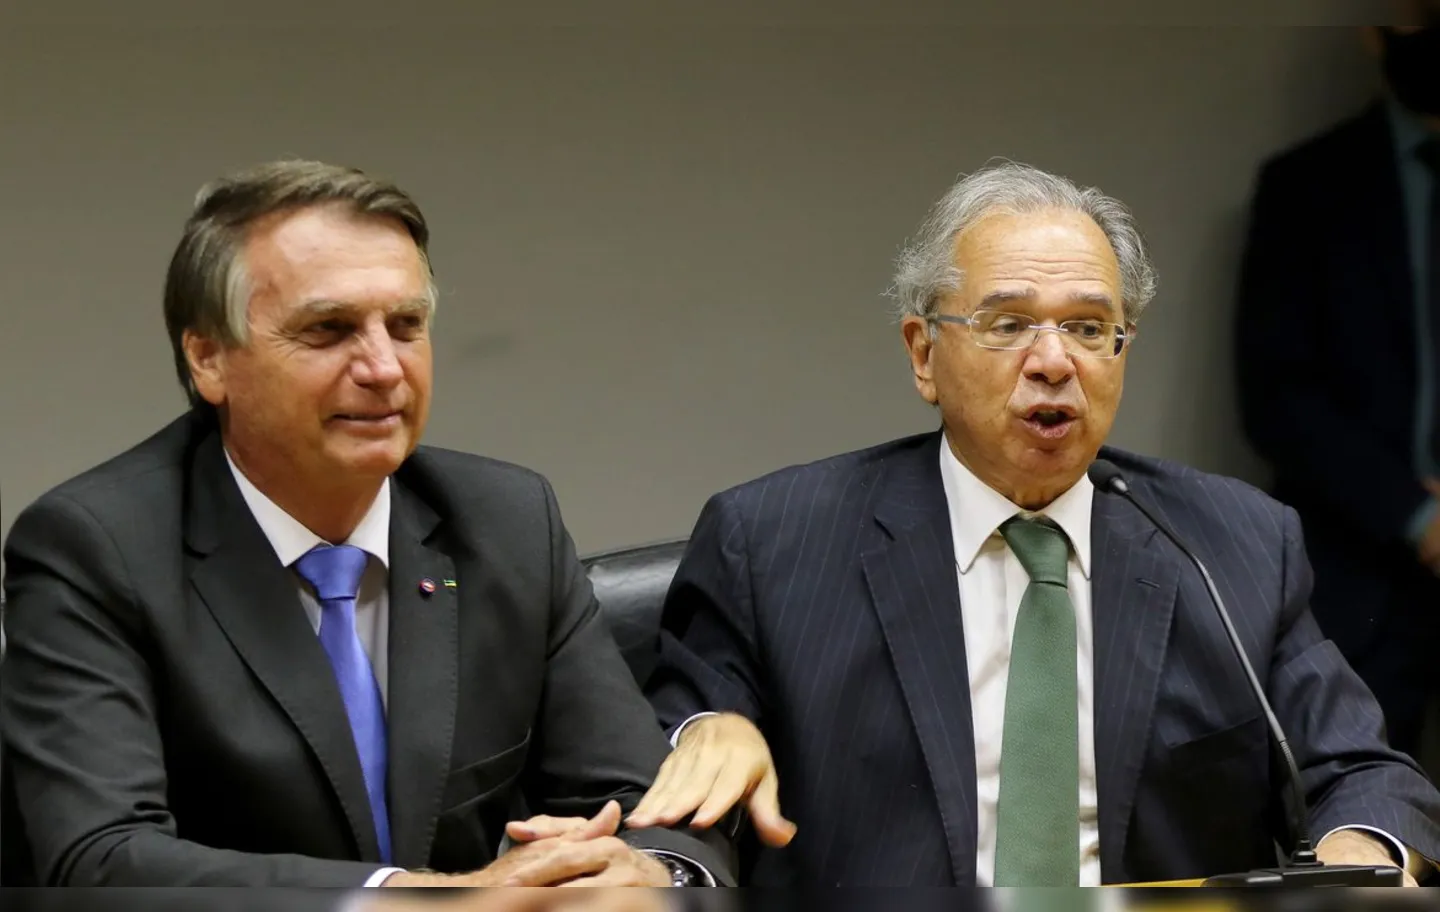 O presidente Jair Bolsonaro em entrevista junto com o ministro Paulo Guedes | Foto: Wilson Dias / Agência Brasil